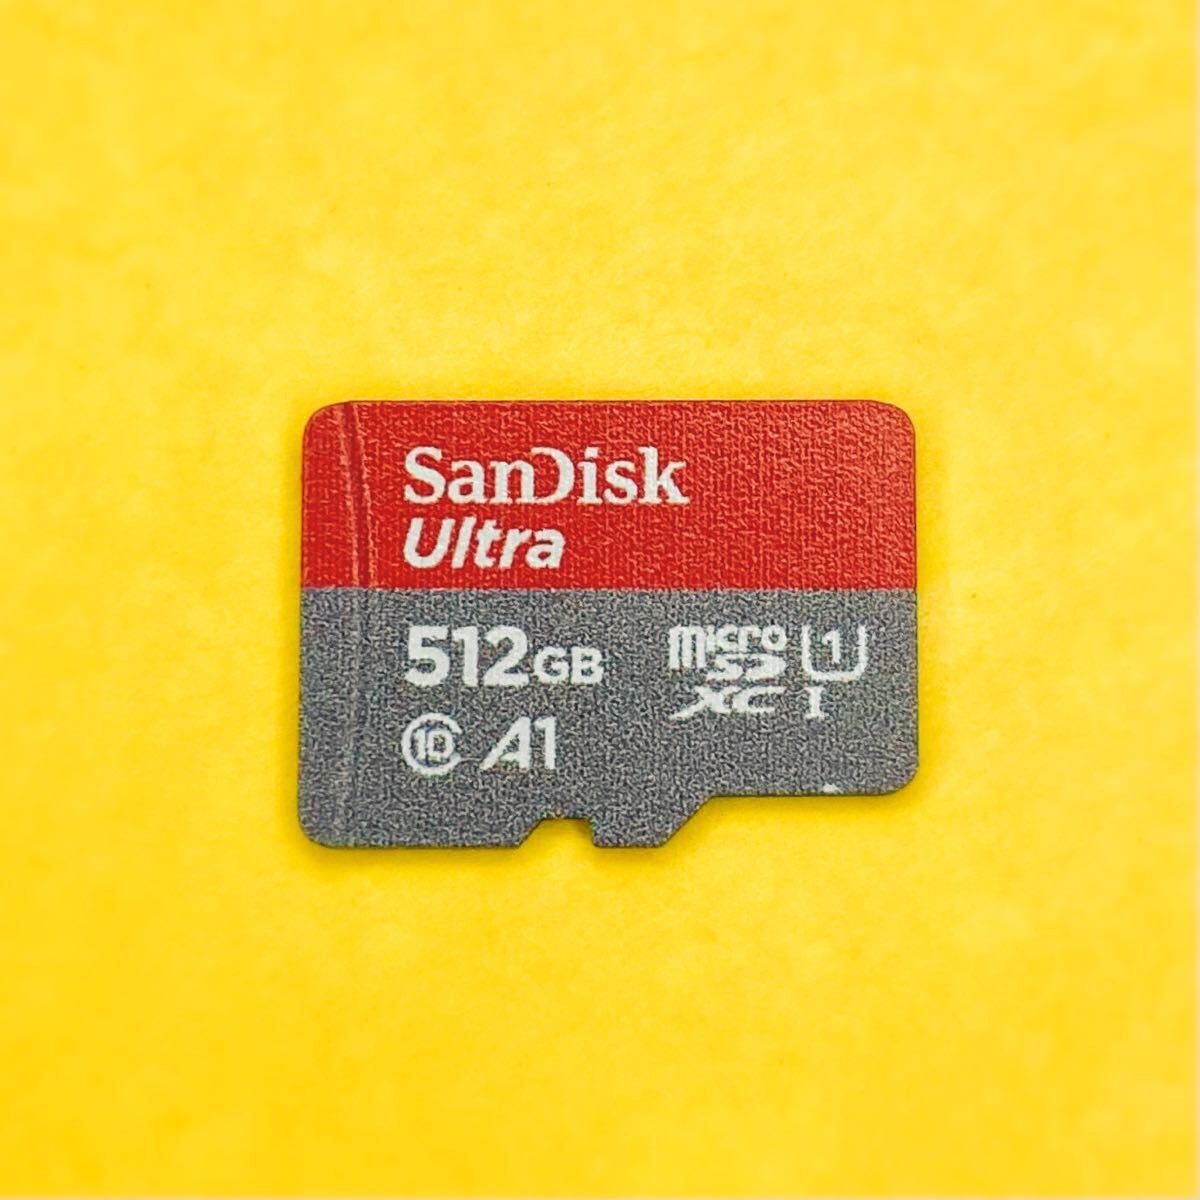 * рабочее состояние подтверждено * SanDisk * 512GB * microSDXC карта microSD карта микро SD карта карта памяти 512G